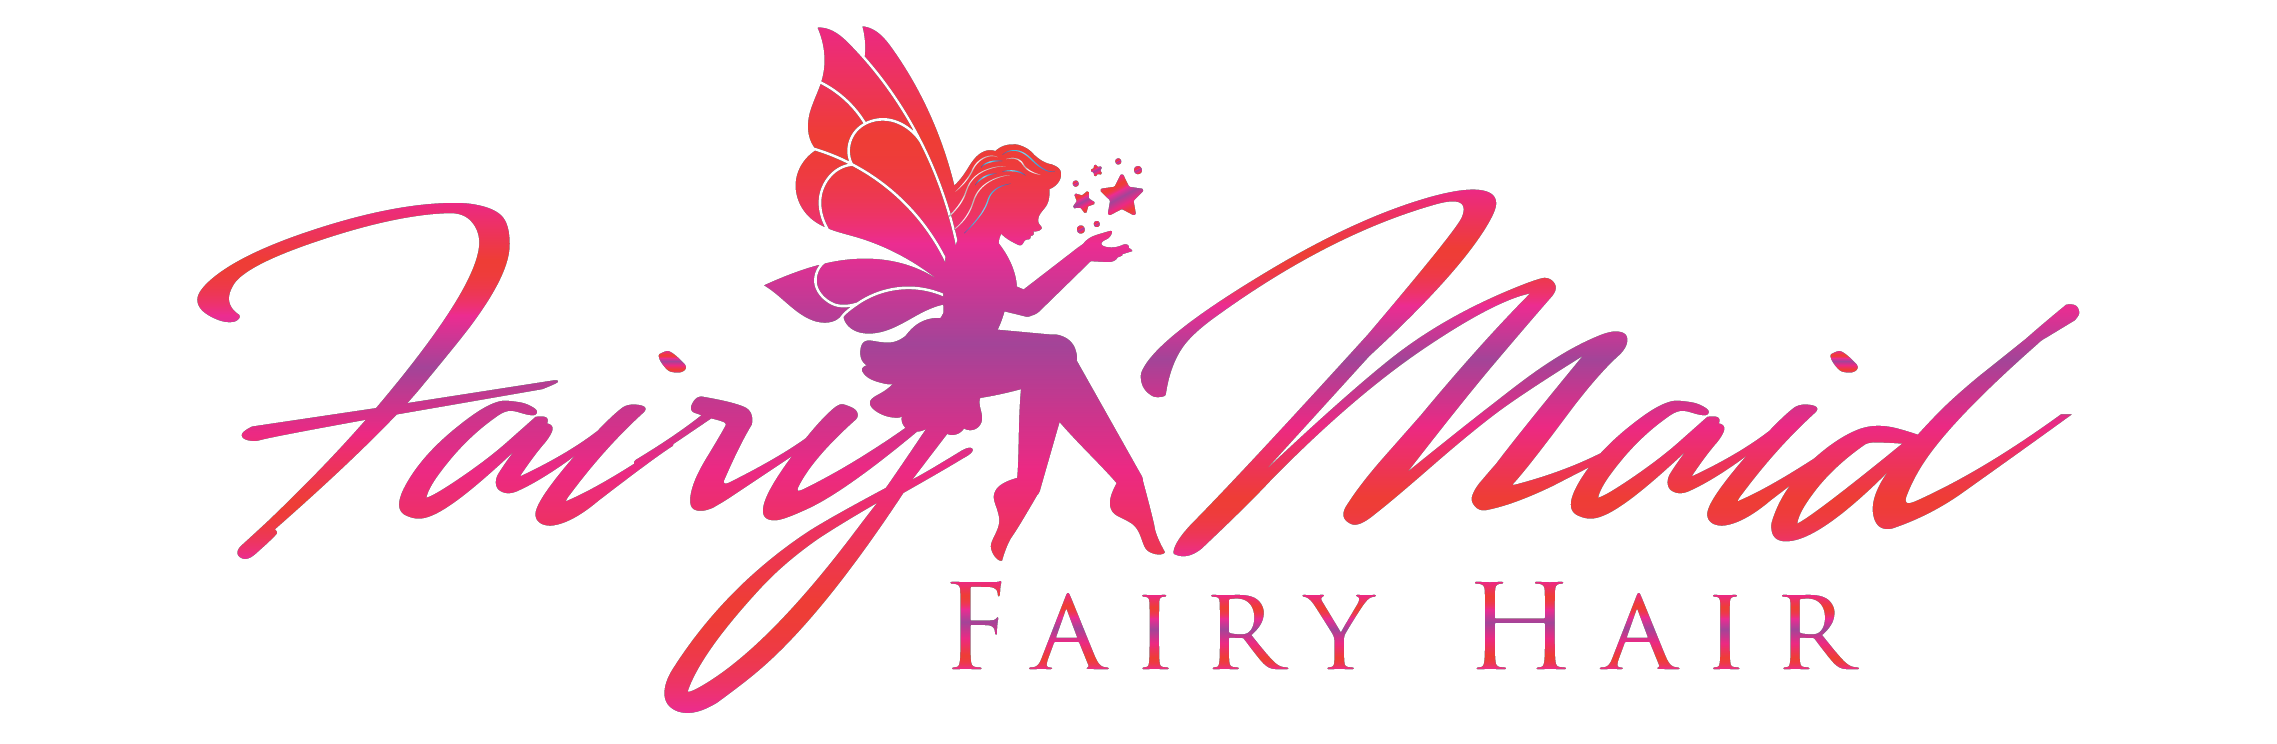 Fairymaid Fairy Hair Nashville Fairy Hair Parties